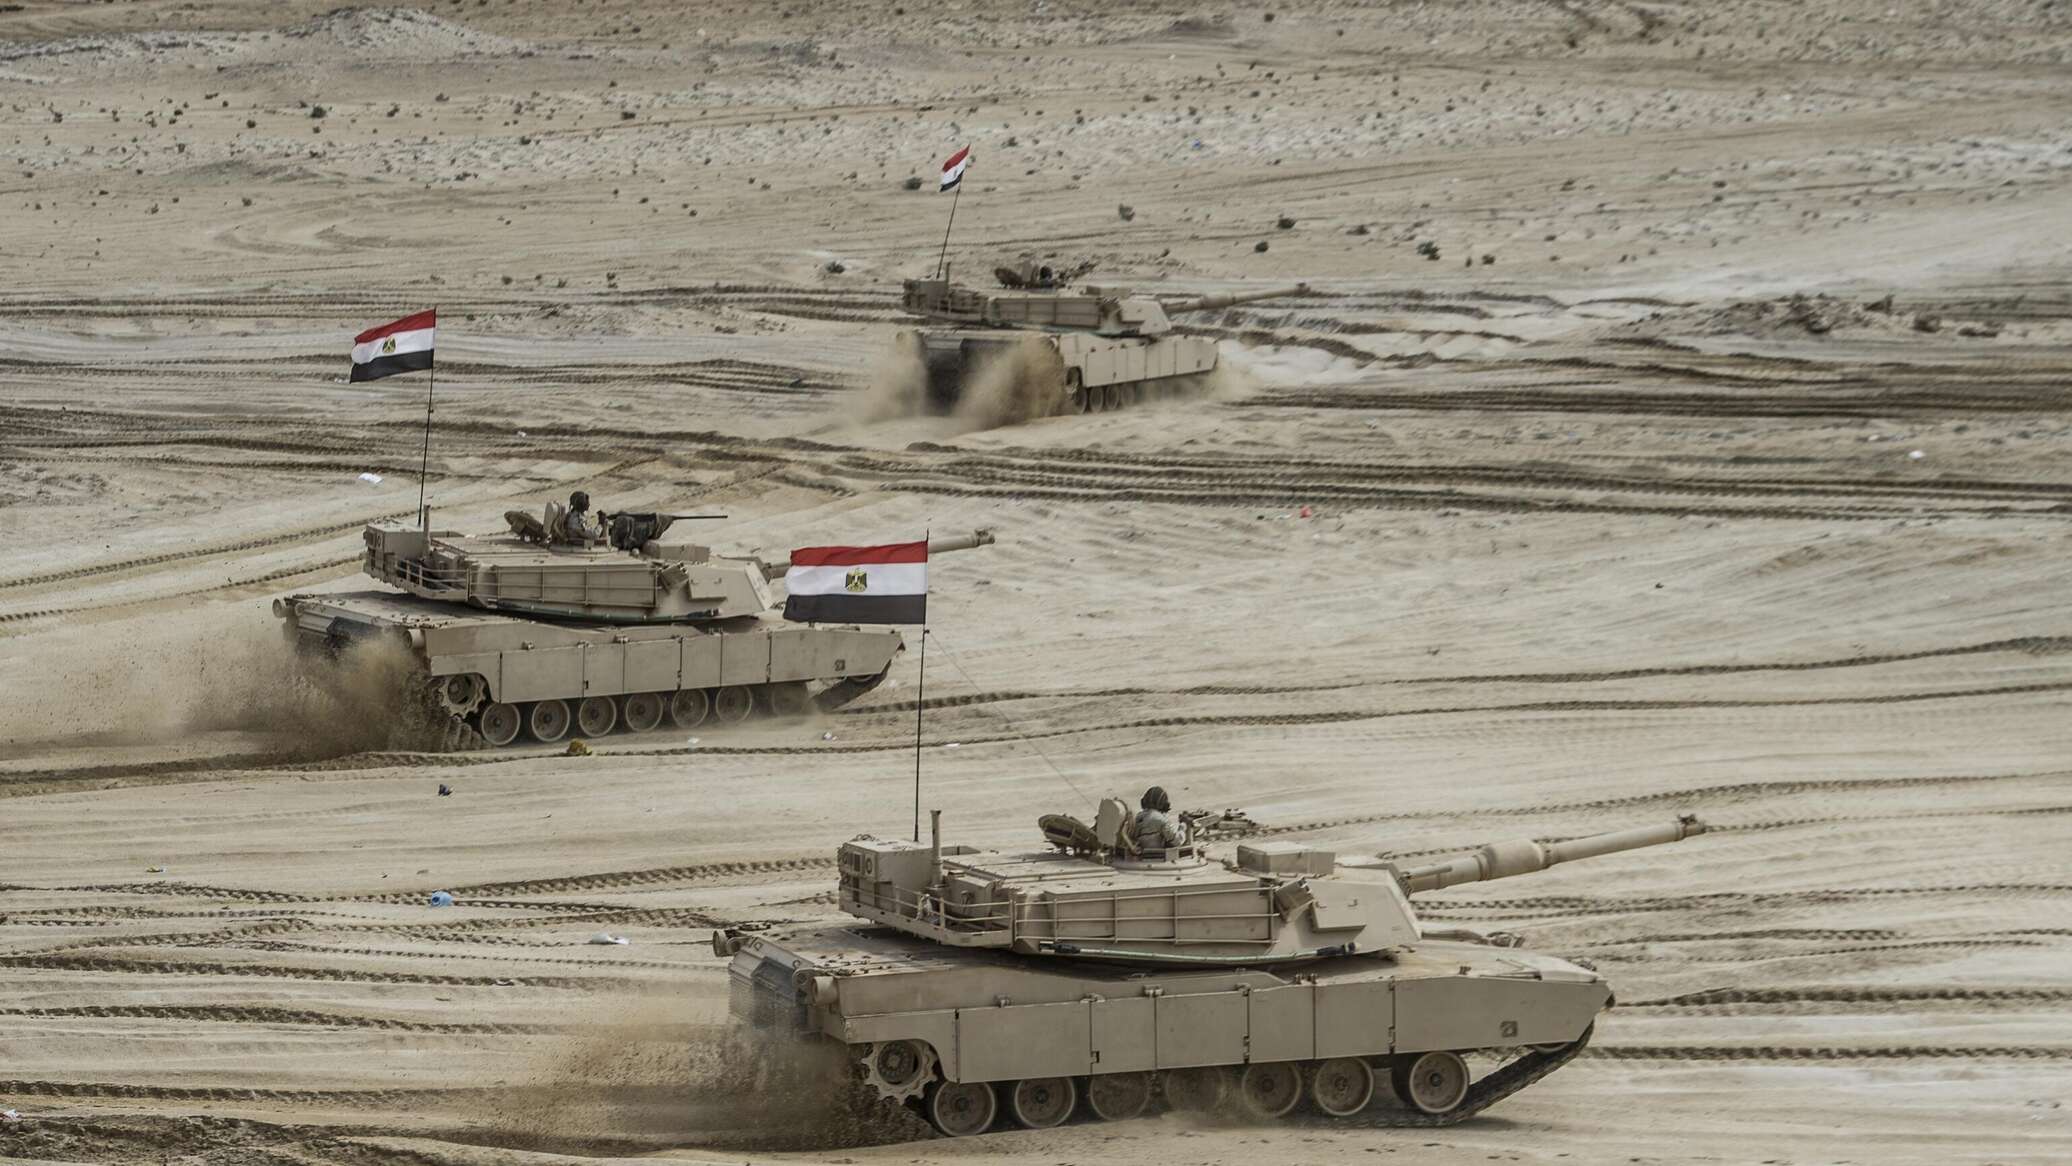 بعد تصريح السيسي عن "القدرات العسكرية".. ما هو حجم قوة الجيش المصري؟